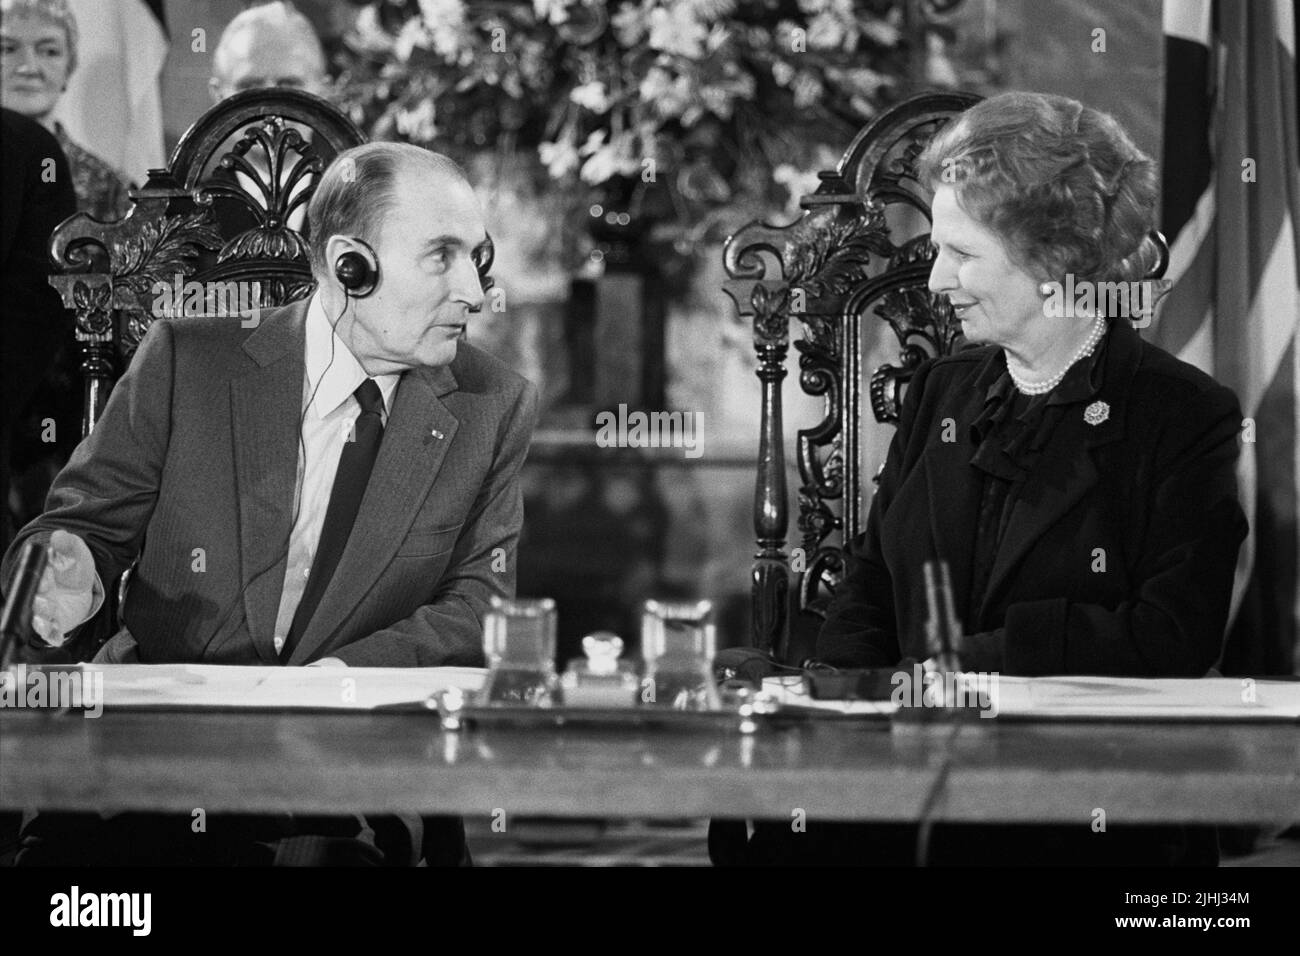 File Photo vom 12/02/86 von Premierministerin Margaret Thatcher mit dem französischen Präsidenten Francois Mitterrand. Ein britischer Diplomat machte sich Sorgen über das geheime Ausmaß der Krankheit Mitterrands, ein Jahrzehnt bevor die terminale Prognose des kränkelnden Staatsmannes veröffentlicht wurde. Sir Reginald Hibbert, der Mann der britischen Regierung in Paris, würdigte die Kollegen von Whitehall im Dezember 1981 mit „Reden über die Gesundheit des Präsidenten, die mir eine gewisse Überzeugung zu bringen schien“. Ausgabedatum: Dienstag, 19. Juli 2022. Stockfoto